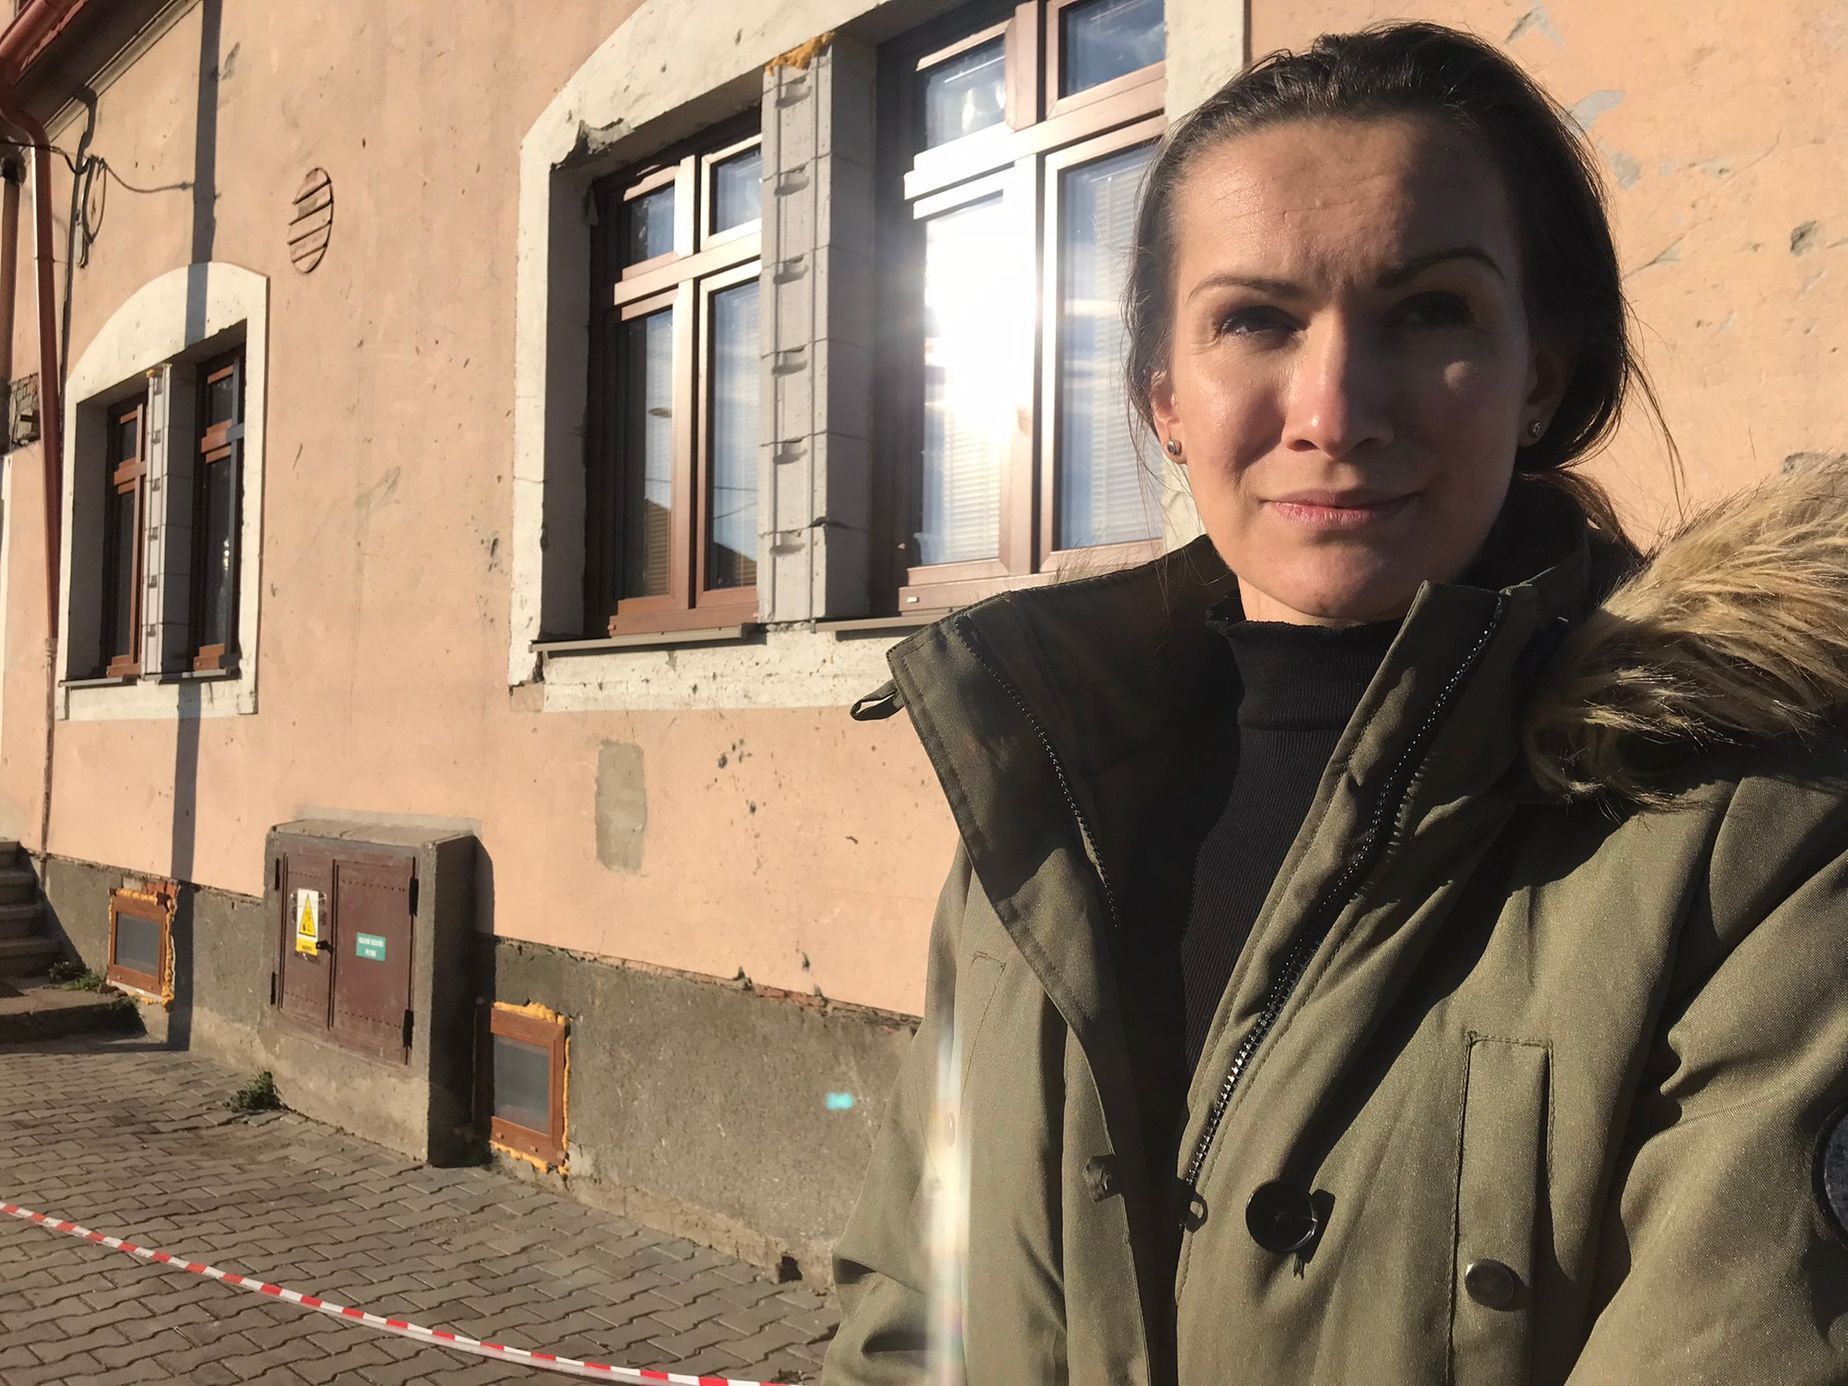 Nemám ráda negativní myšlenky, vím, že bude zase lépe, říká Aneta Stibůrková. V jejich rodině padly kvůli tornádu tři domy, další byly poškozeny.